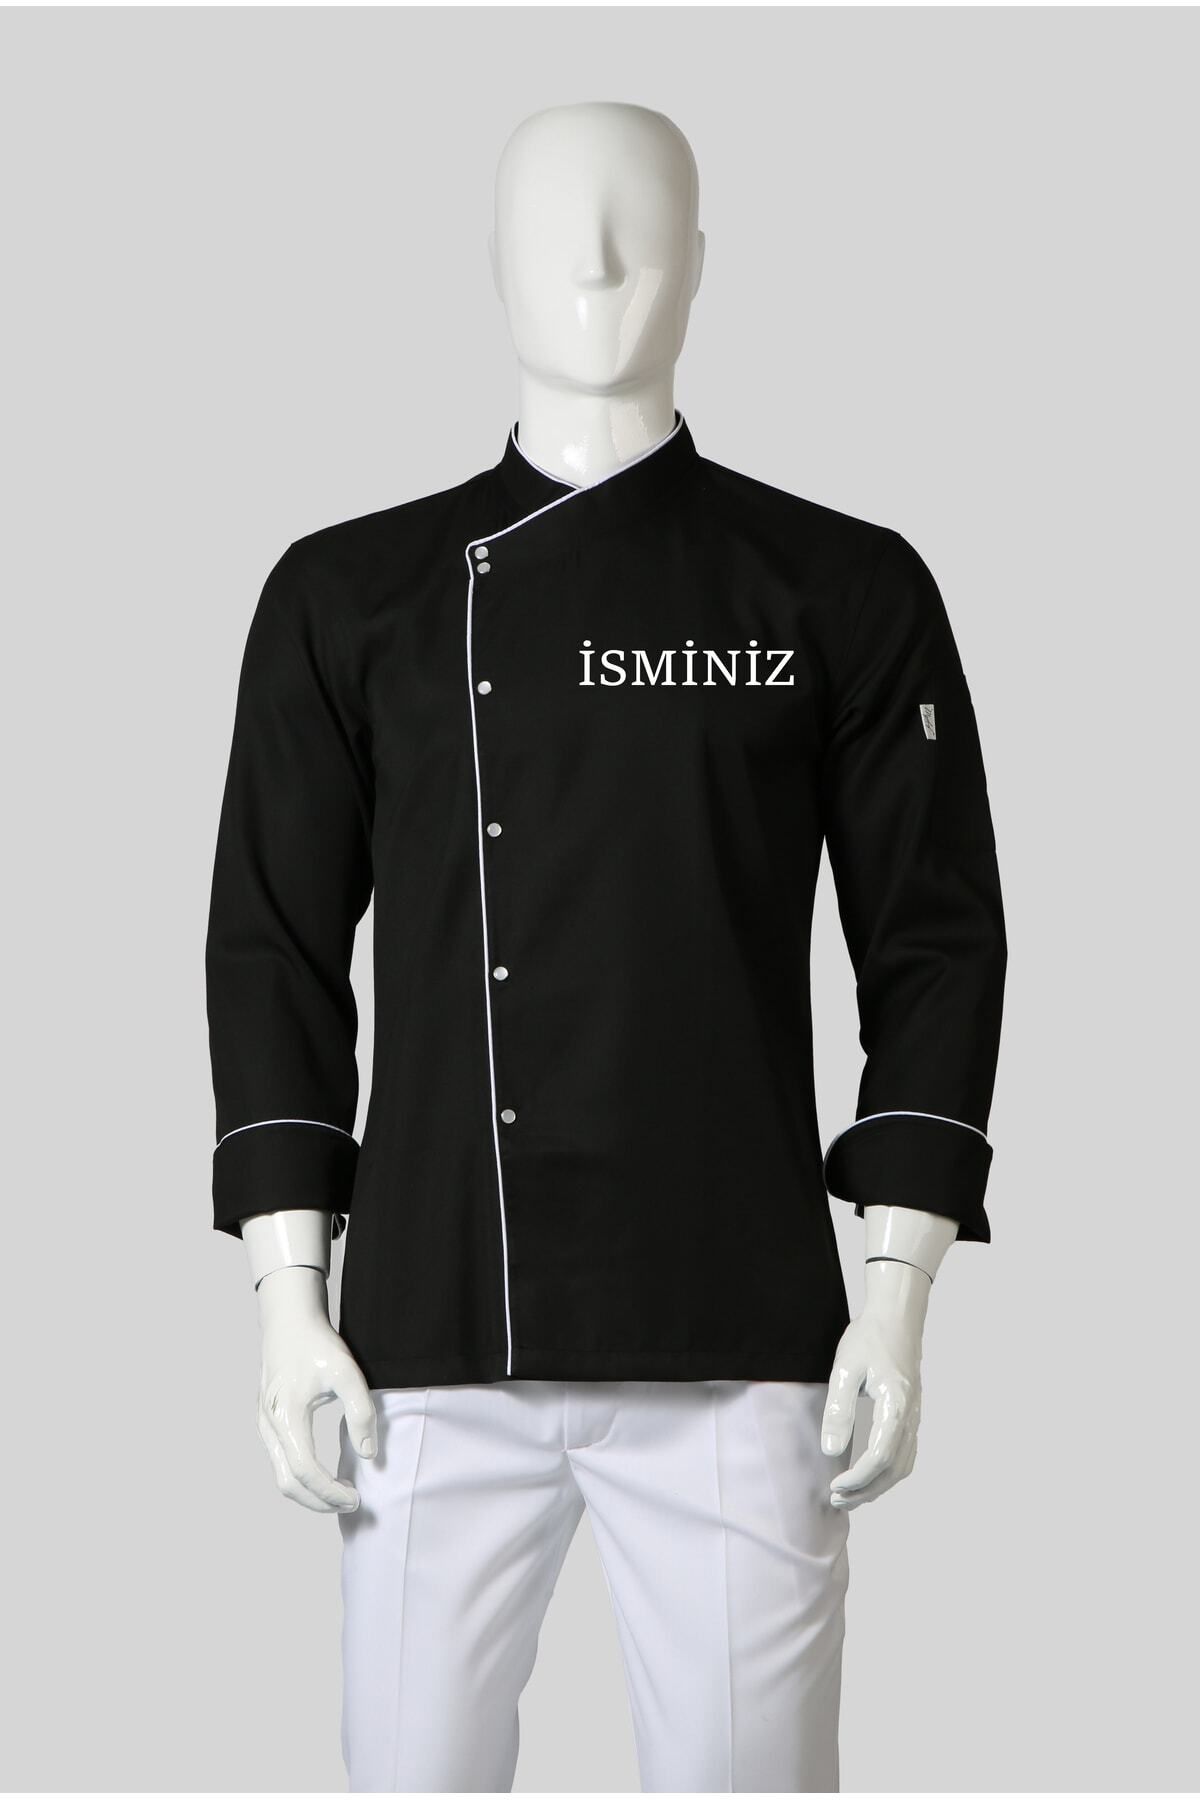 My Chef Şef Ceketi Siyah Gabardin Biyeli Rana Yaka Erkek Aşçı Kıyafeti